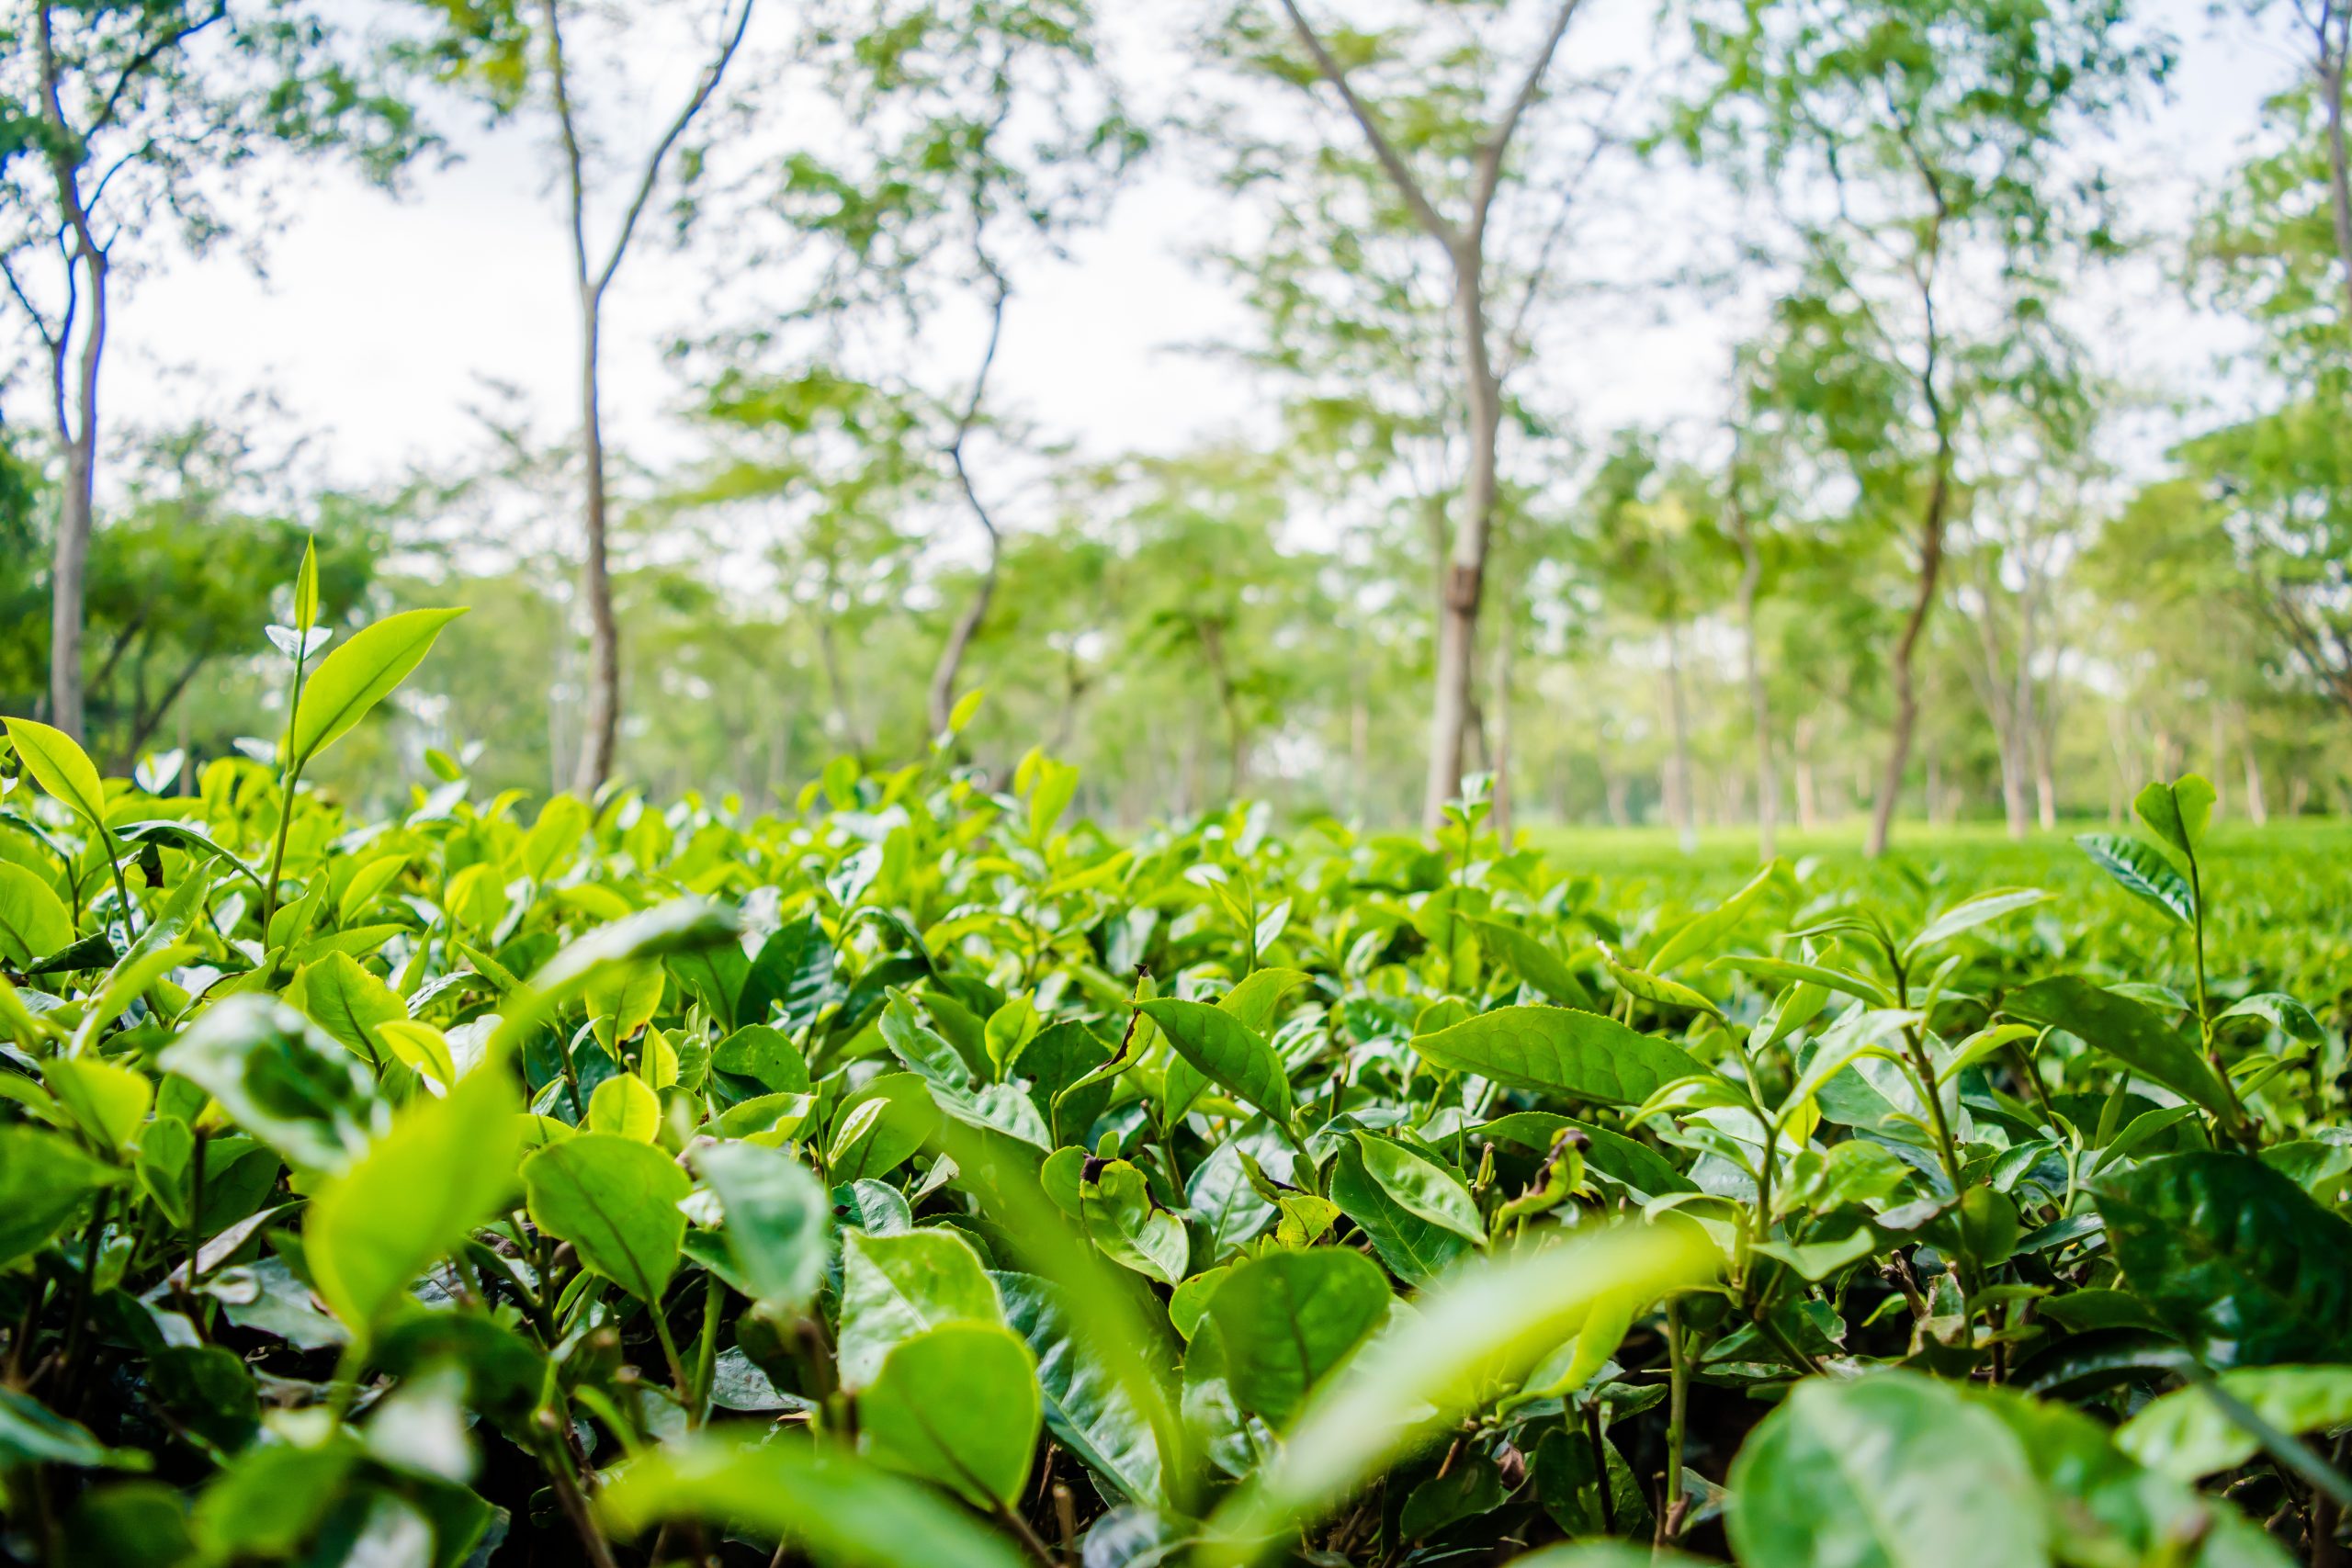 Assam Tea Leaves Garden